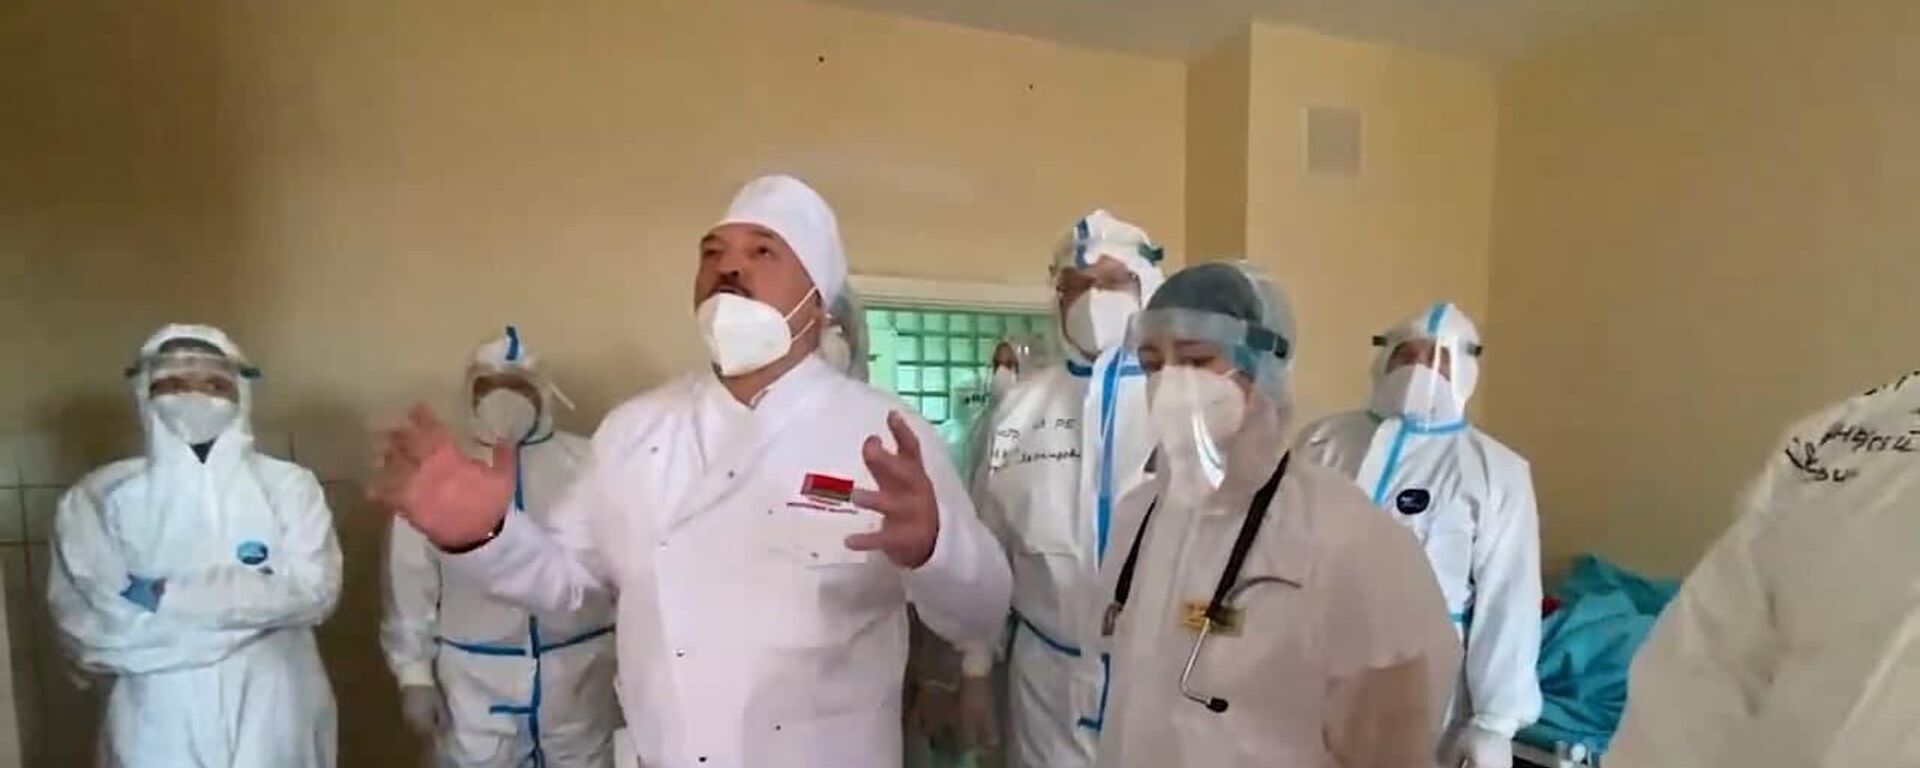 Живой я: Лукашенко побывал в красной зоне больницы в Орше - видео - Sputnik Беларусь, 1920, 06.11.2021